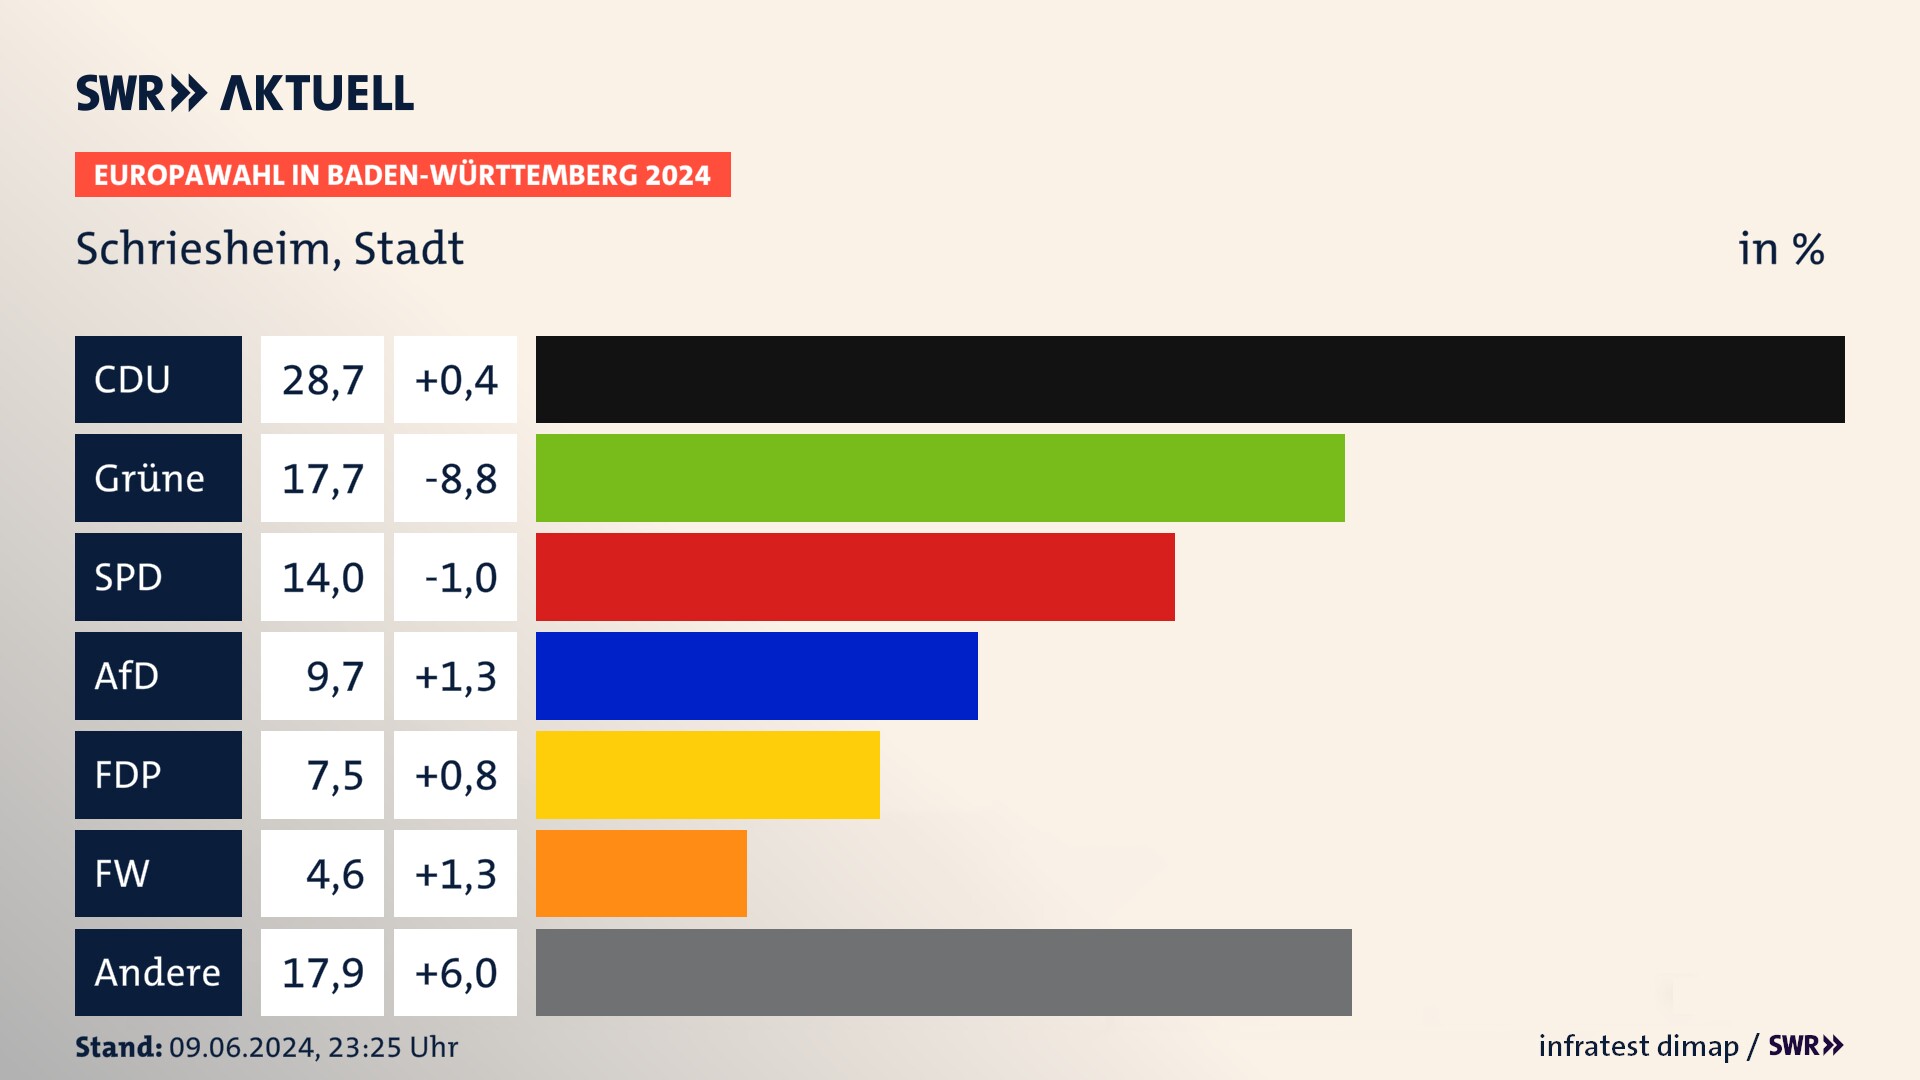 Europawahl 2024 Endergebnis Zweitstimme für Schriesheim, Stadt. In Schriesheim, Stadt erzielt die CDU 28,7 Prozent der gültigen  Stimmen. Die Grünen landen bei 17,7 Prozent. Die SPD erreicht 14,0 Prozent. Die AfD kommt auf 9,7 Prozent. Die FDP landet bei 7,5 Prozent. Die Freien Wähler erreichen 4,6 Prozent.